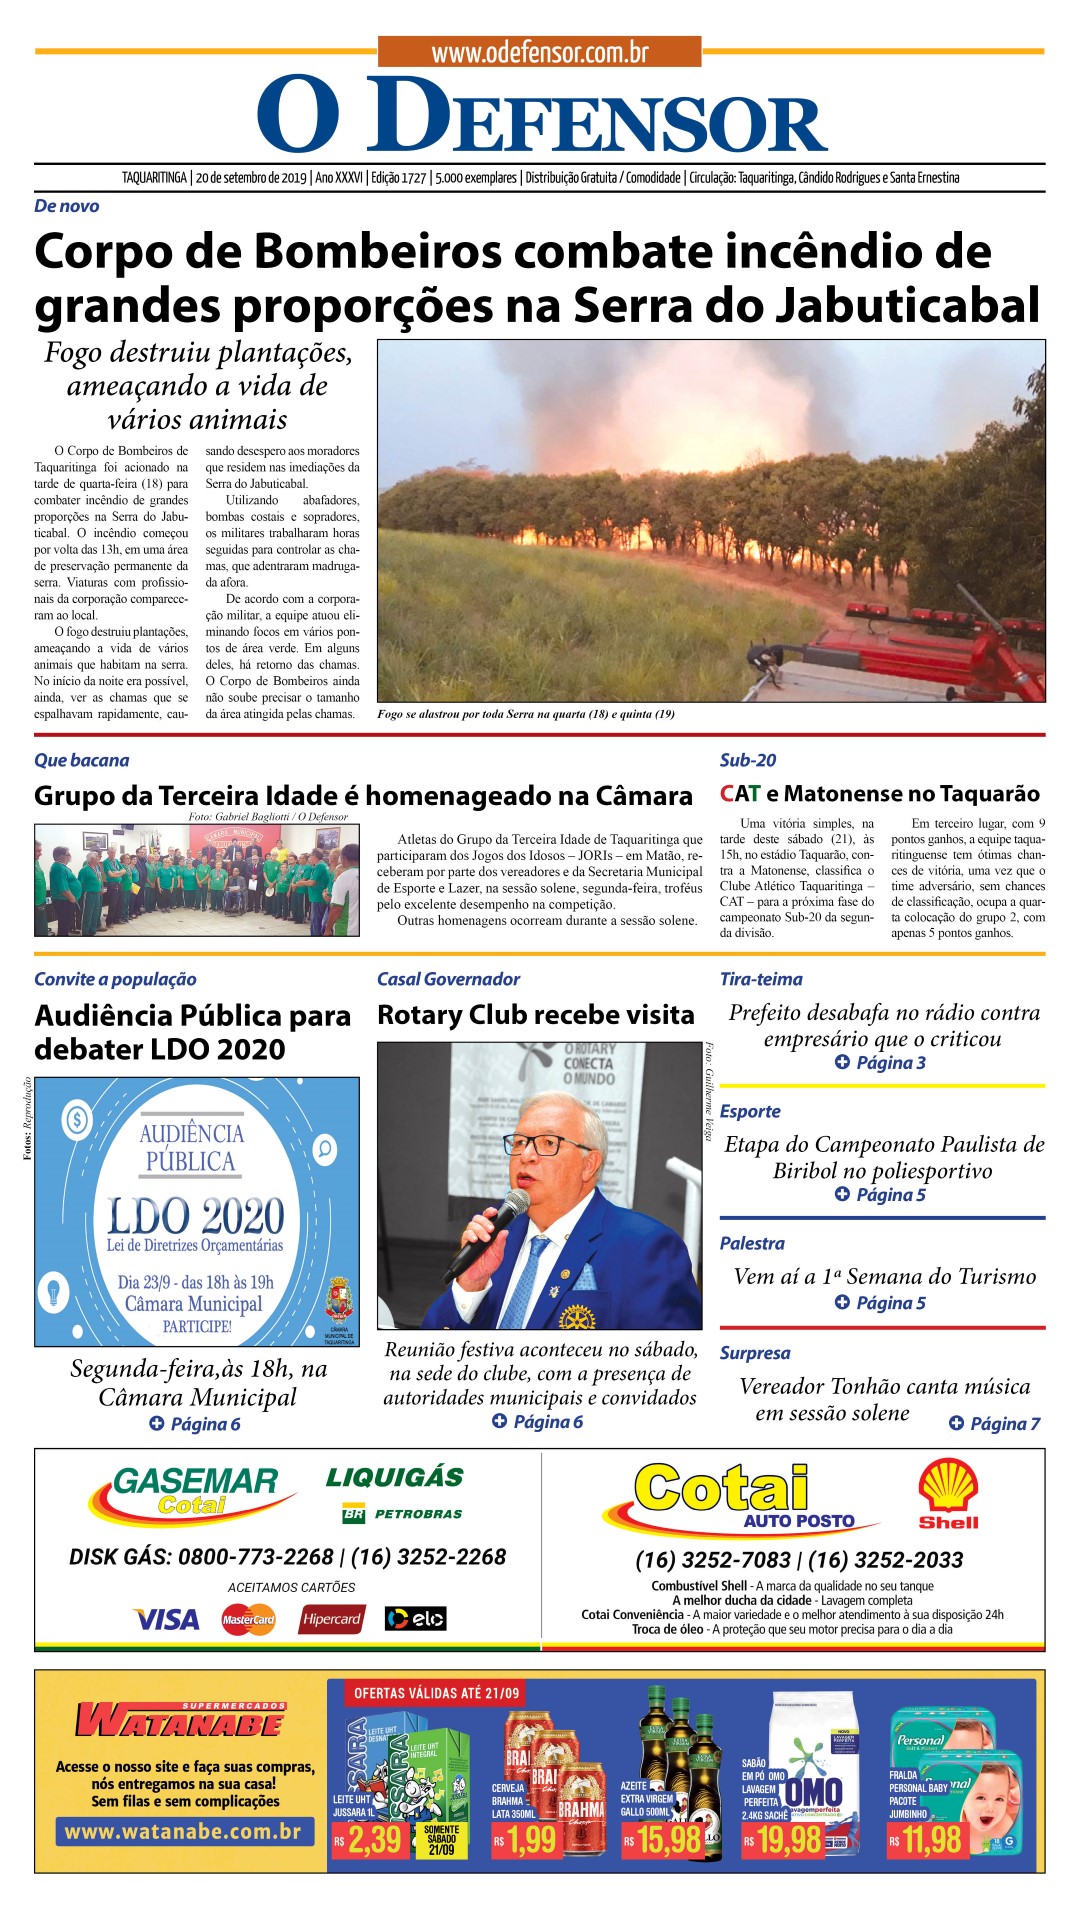 Dois Pontos - O Defensor  O Portal de Notícias de Taquaritinga e região